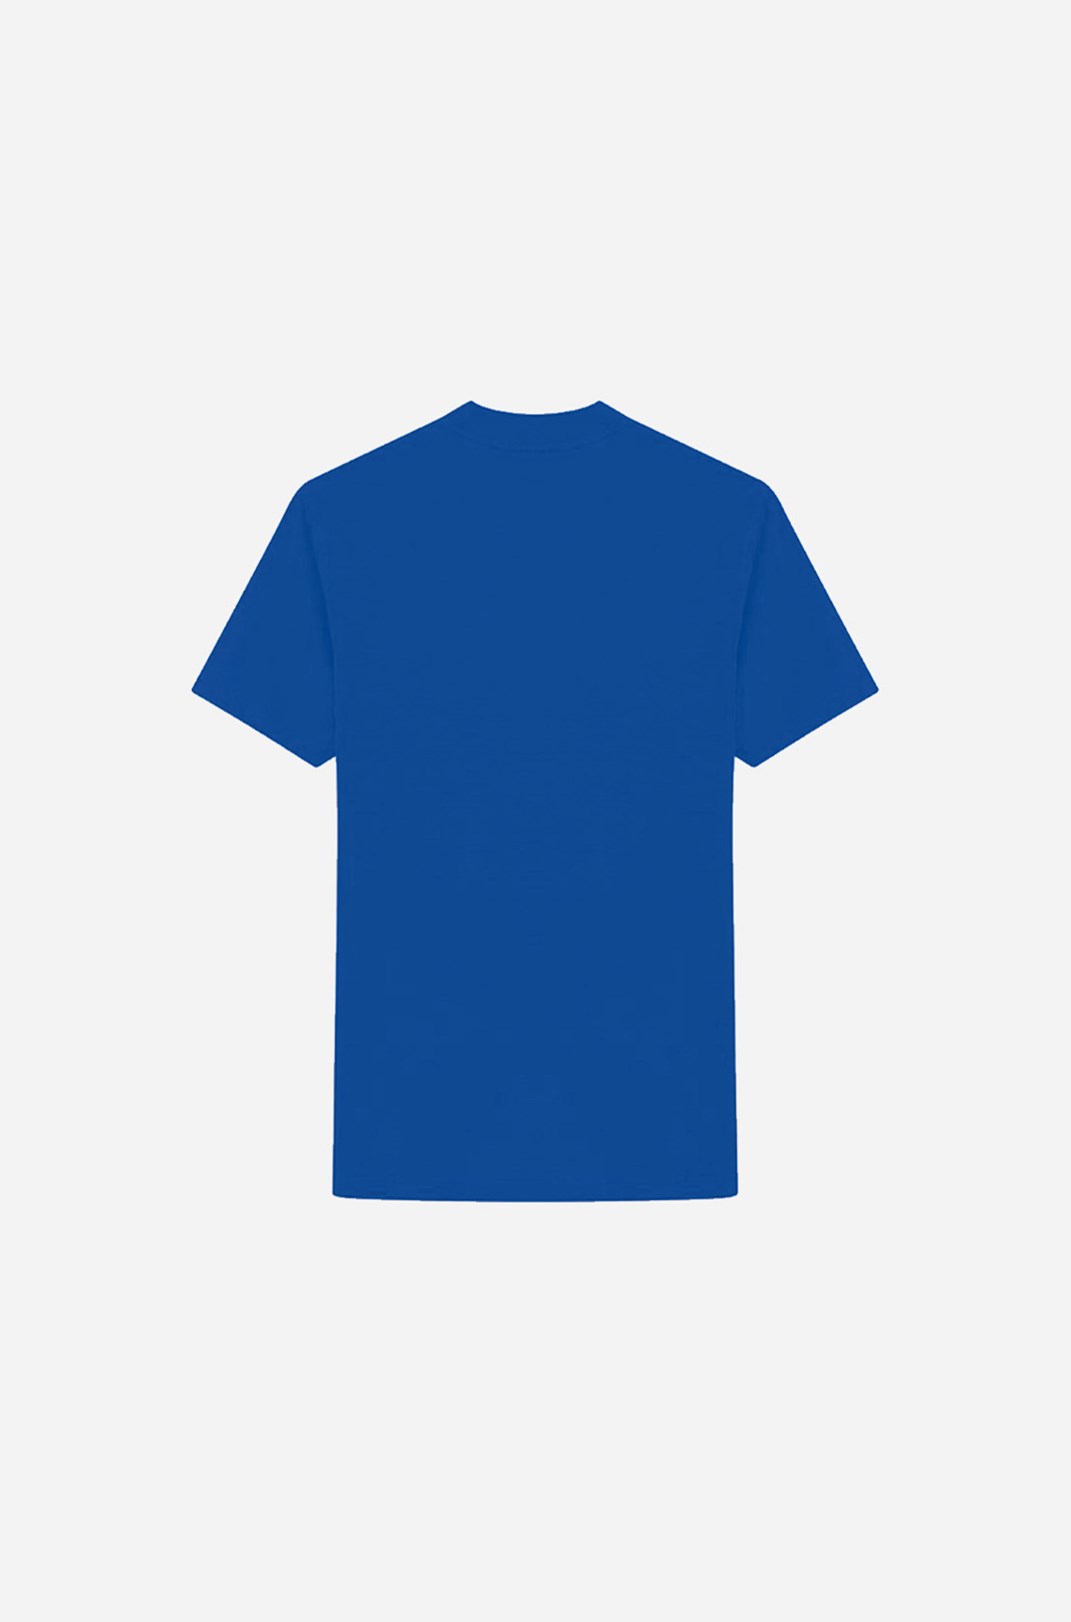 Camiseta Tradicional Approve Yourself Azul Marinho